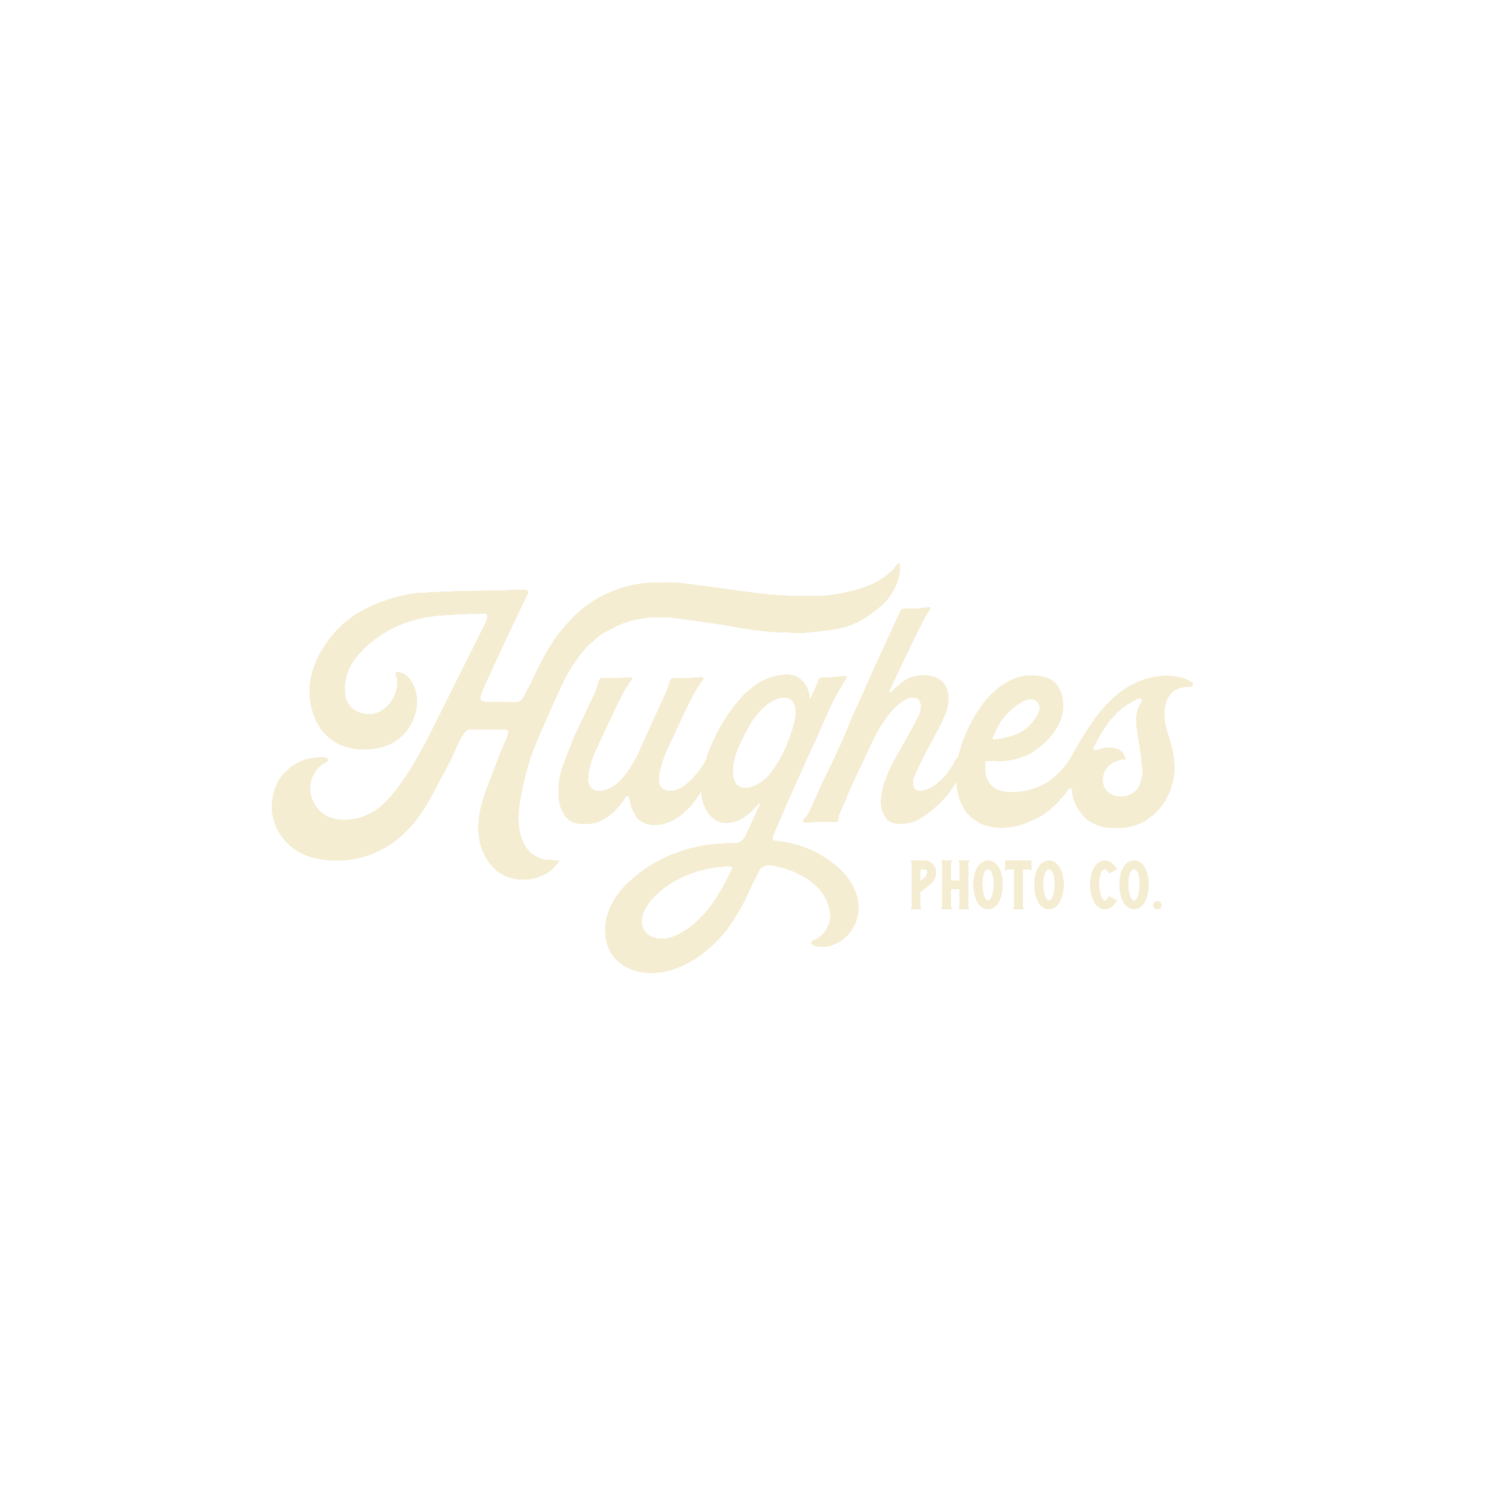 Hughes Photo Co.